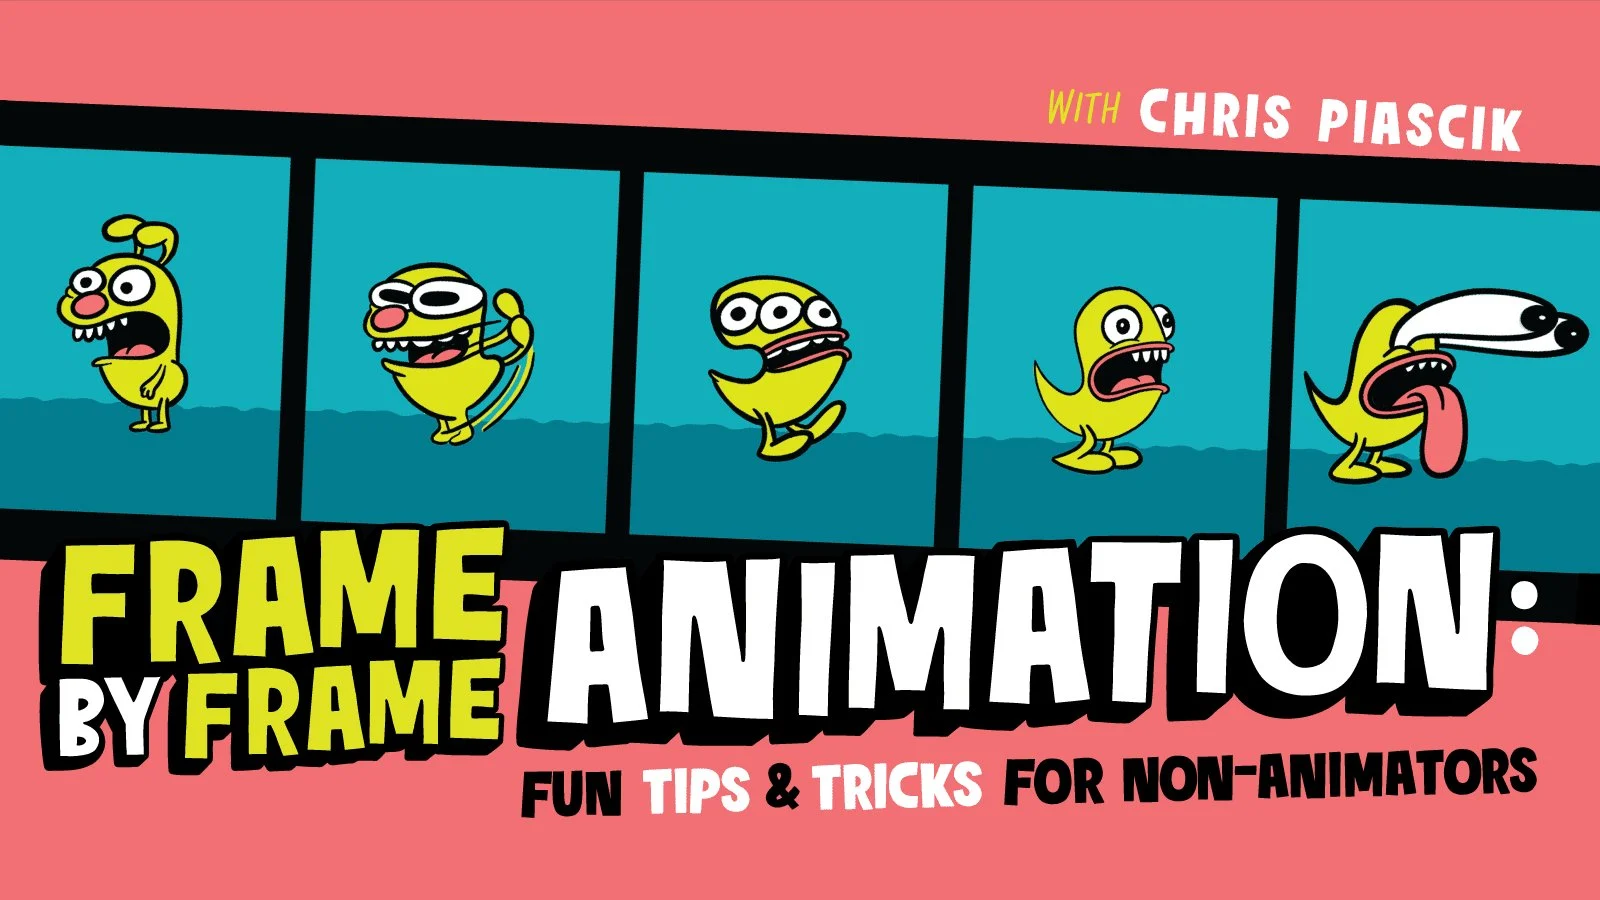 آموزش انیمیشن فریم به فریم: نکات و ترفندهای سرگرم کننده برای غیر انیماتورها